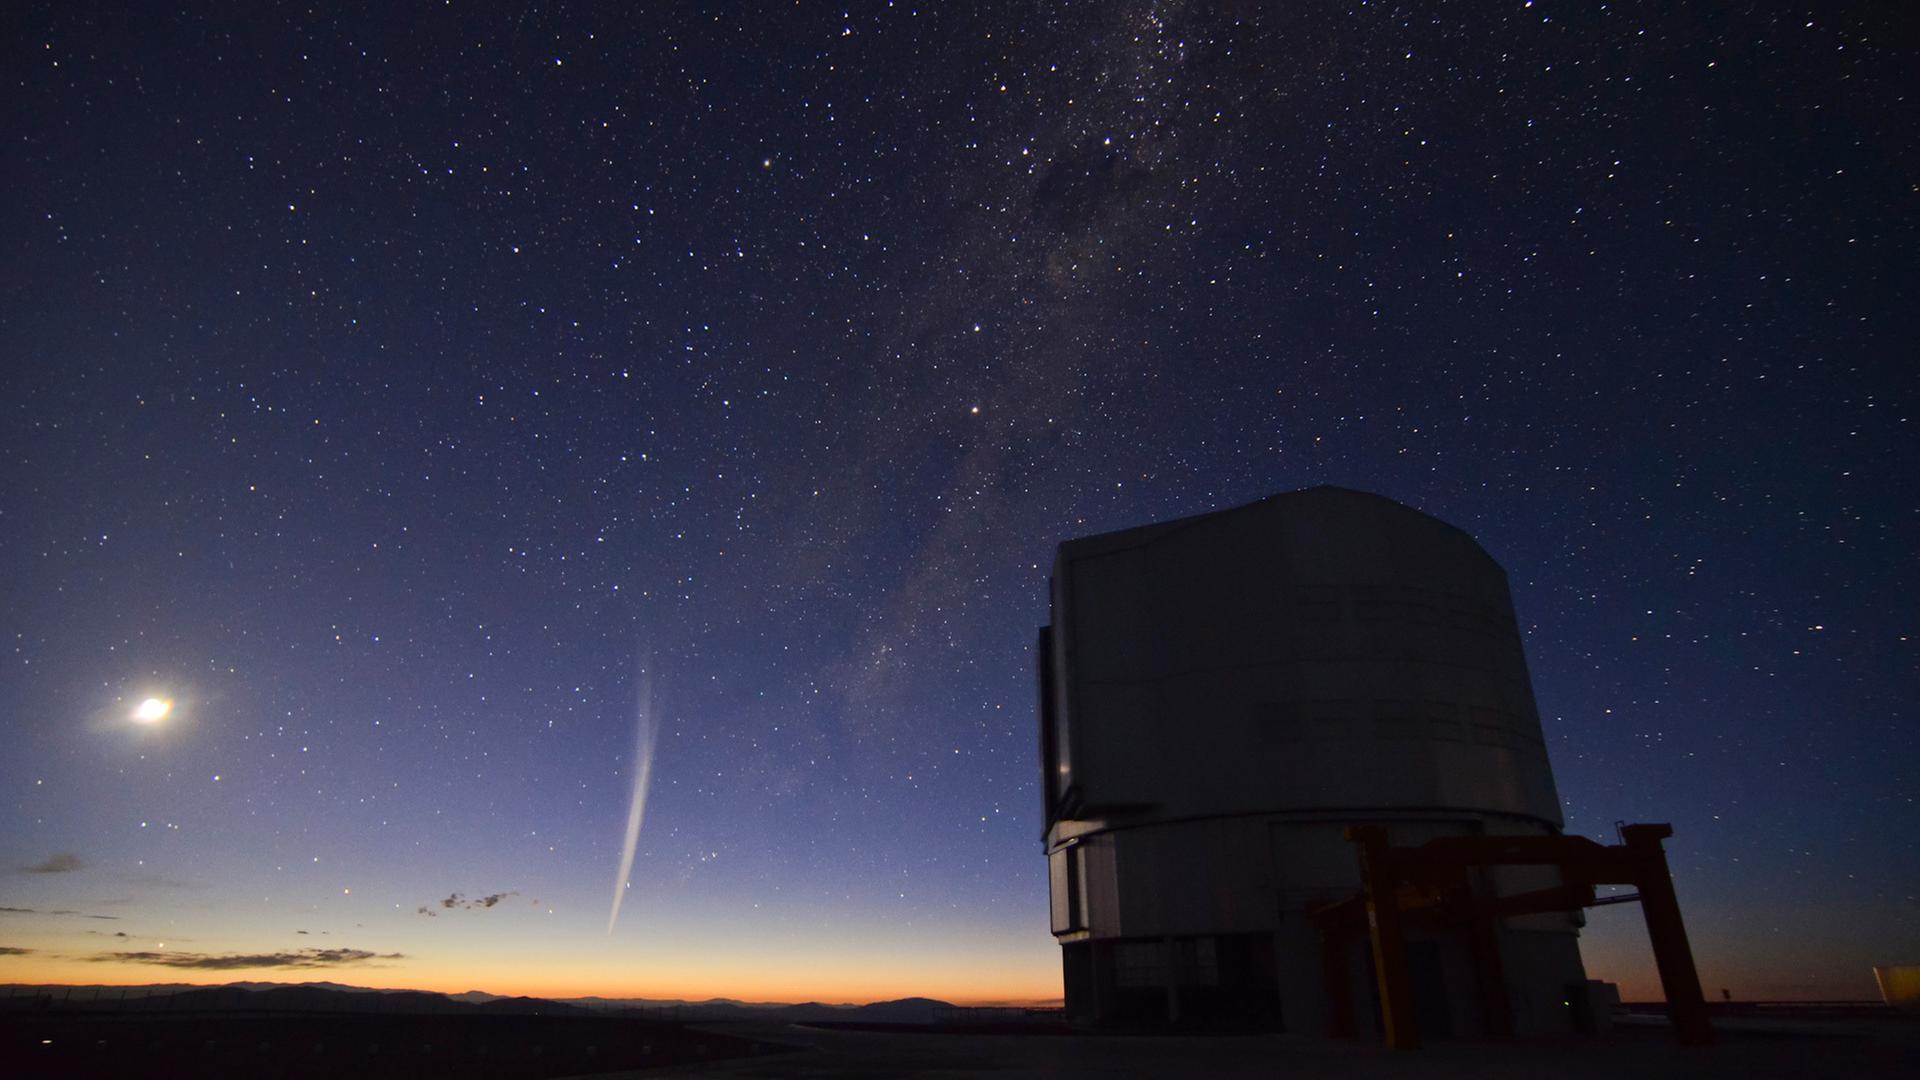 Der vor kurzem entdeckte Komet Lovejoy (M) ist am 22.12.2011 in der Dämmerung am Horizont Weihnachtsgeschenk für Astronomie-Fans von der Paranal-Observatorium der ESO in Chile aus zu sehen. Der Himmelskörper habe unerwartet seine Passage an der Sonne überlebt, wie die Europäische Südsternwarte (Eso) mitteilte. Sichtbar sei der Komet allerdings nur von der Südhalbkugel aus. Sein heller Schweif ist mehrere Millionen Kilometer lang und besteht aus Staubpartikeln, die vom Sonnenwind davongetrieben werden. Foto: Gabriel Brammer/ESO dpa (zu dpa 1257 am 27.12.2011) ++